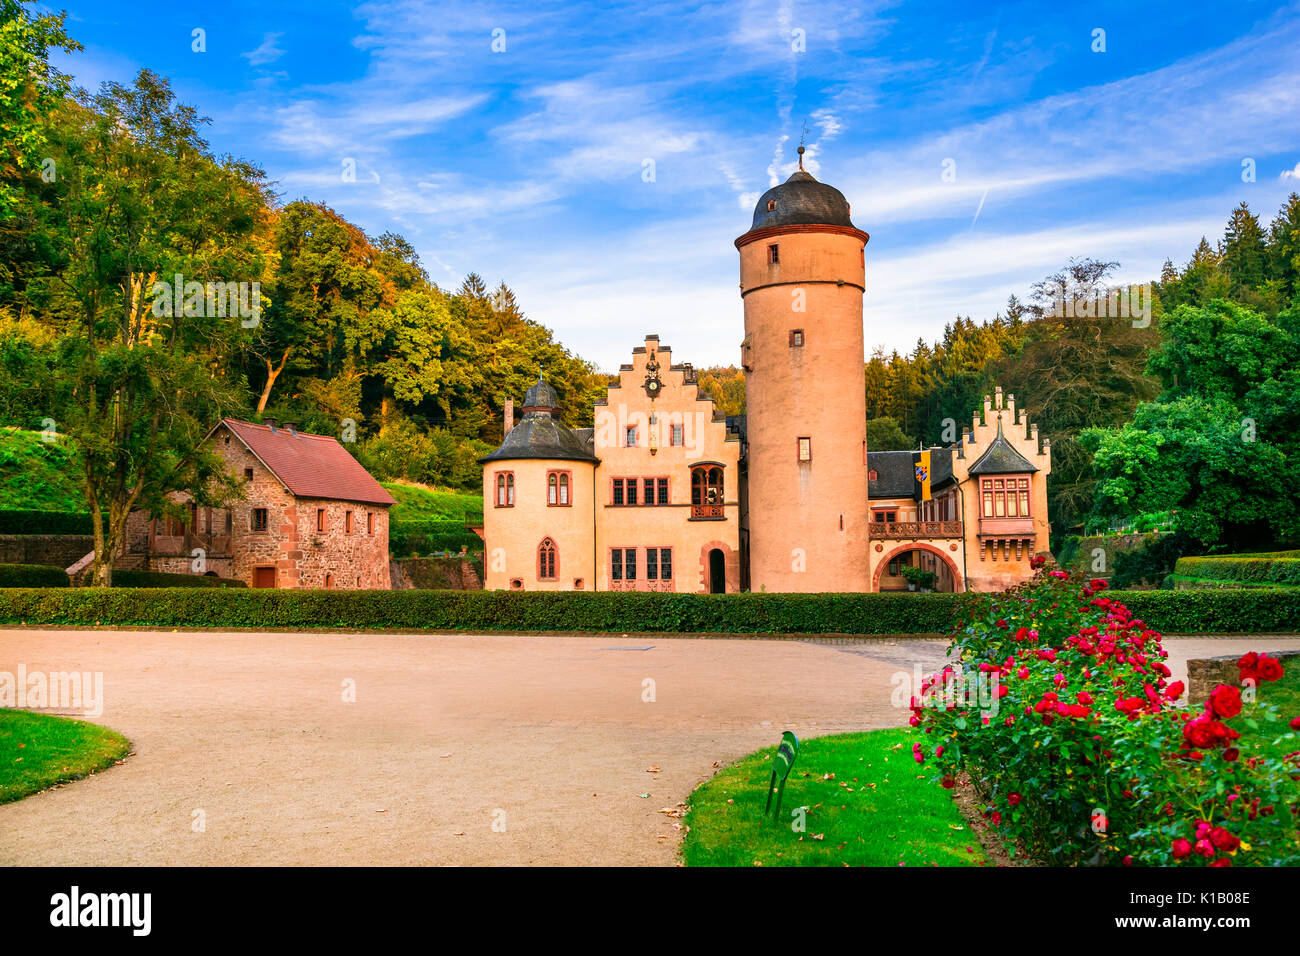 Schöne romantische Schlösser in Deutschland - Schloss Mespelbrunn Stockfoto